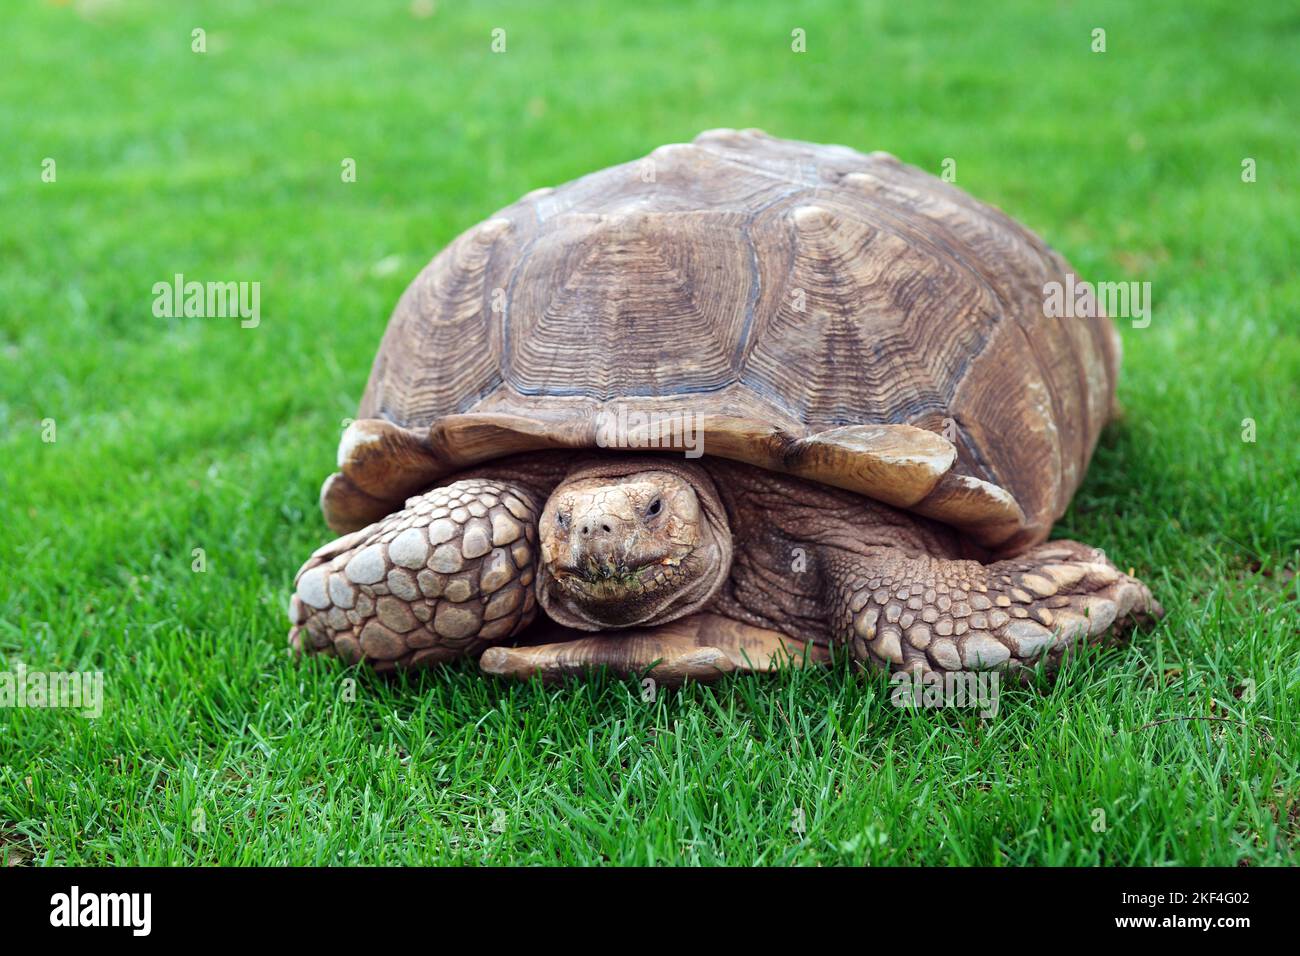 Schildkröte (Testudinata), Frontalaufnahme einer Landschildkröte auf einer Wiese, Reptilien, Galapagos, Chile, Stock Photo